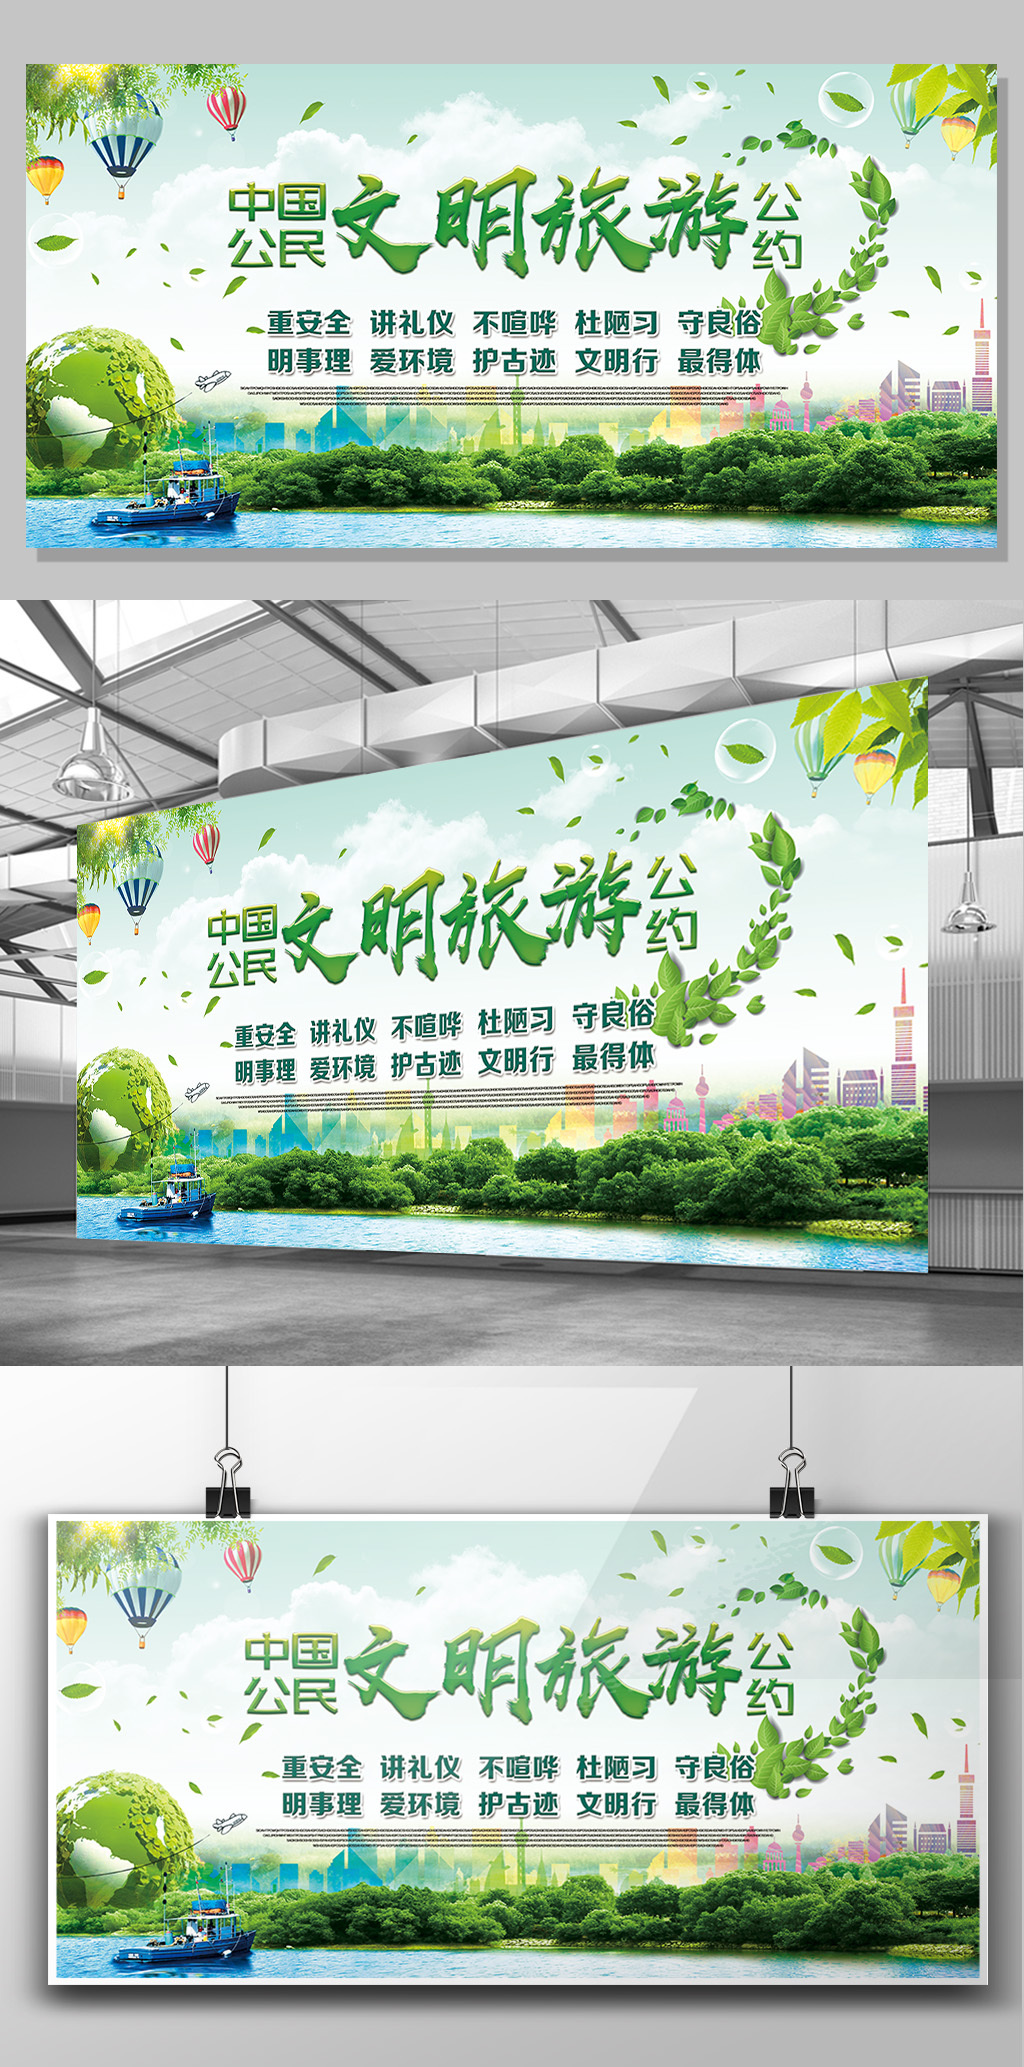 中国公民文明旅游公约展板图片设计素材_高清PSD模板下载(297.47MB)15378281979分享_展板设计大全-我图网